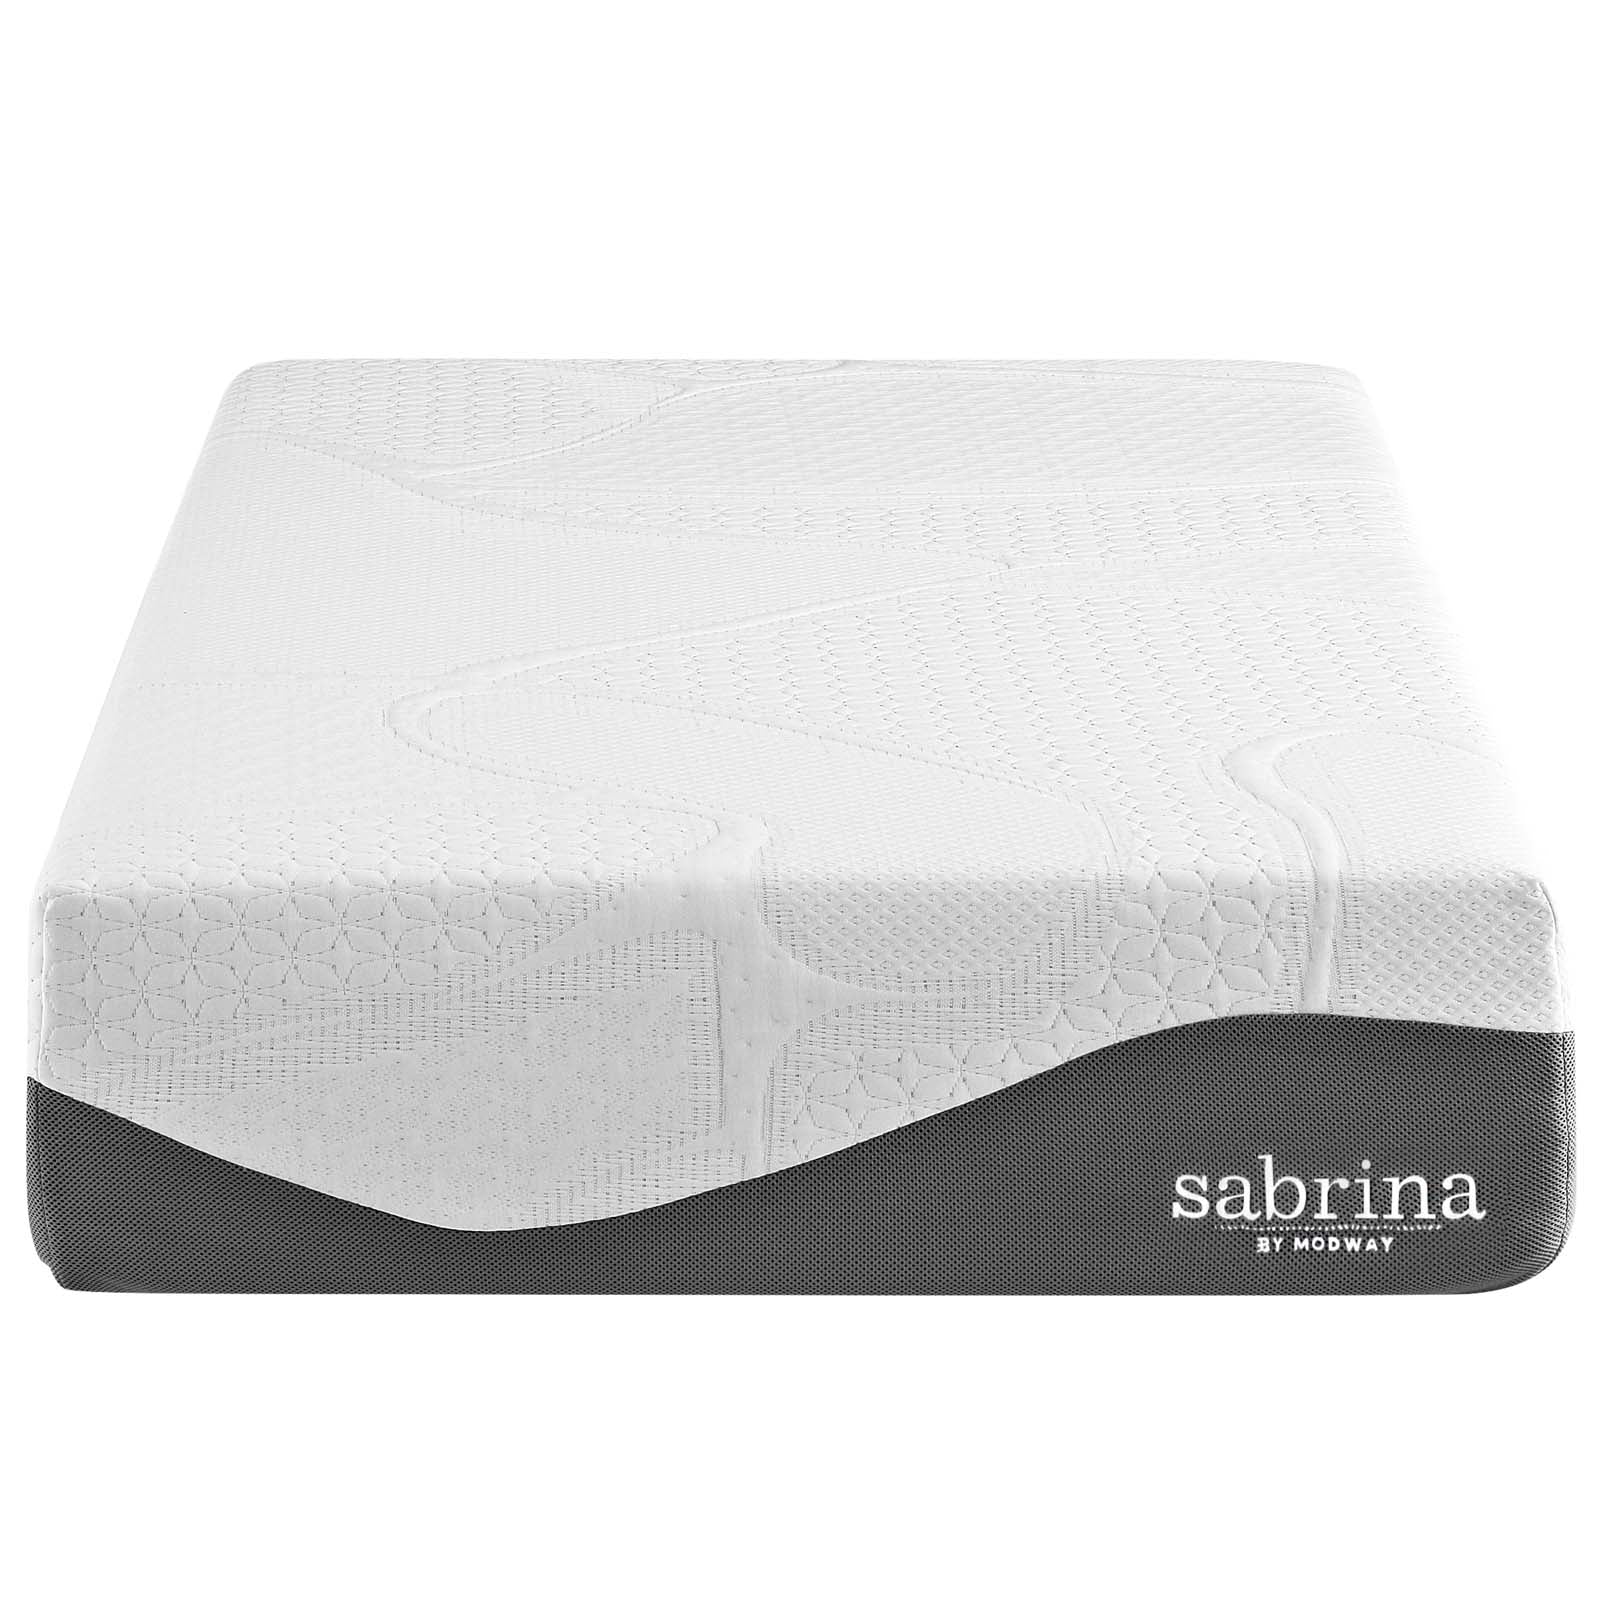 Modway Sabrina 12" Twin Memory Foam Mattress - White | Mattresses | Modishstore-5